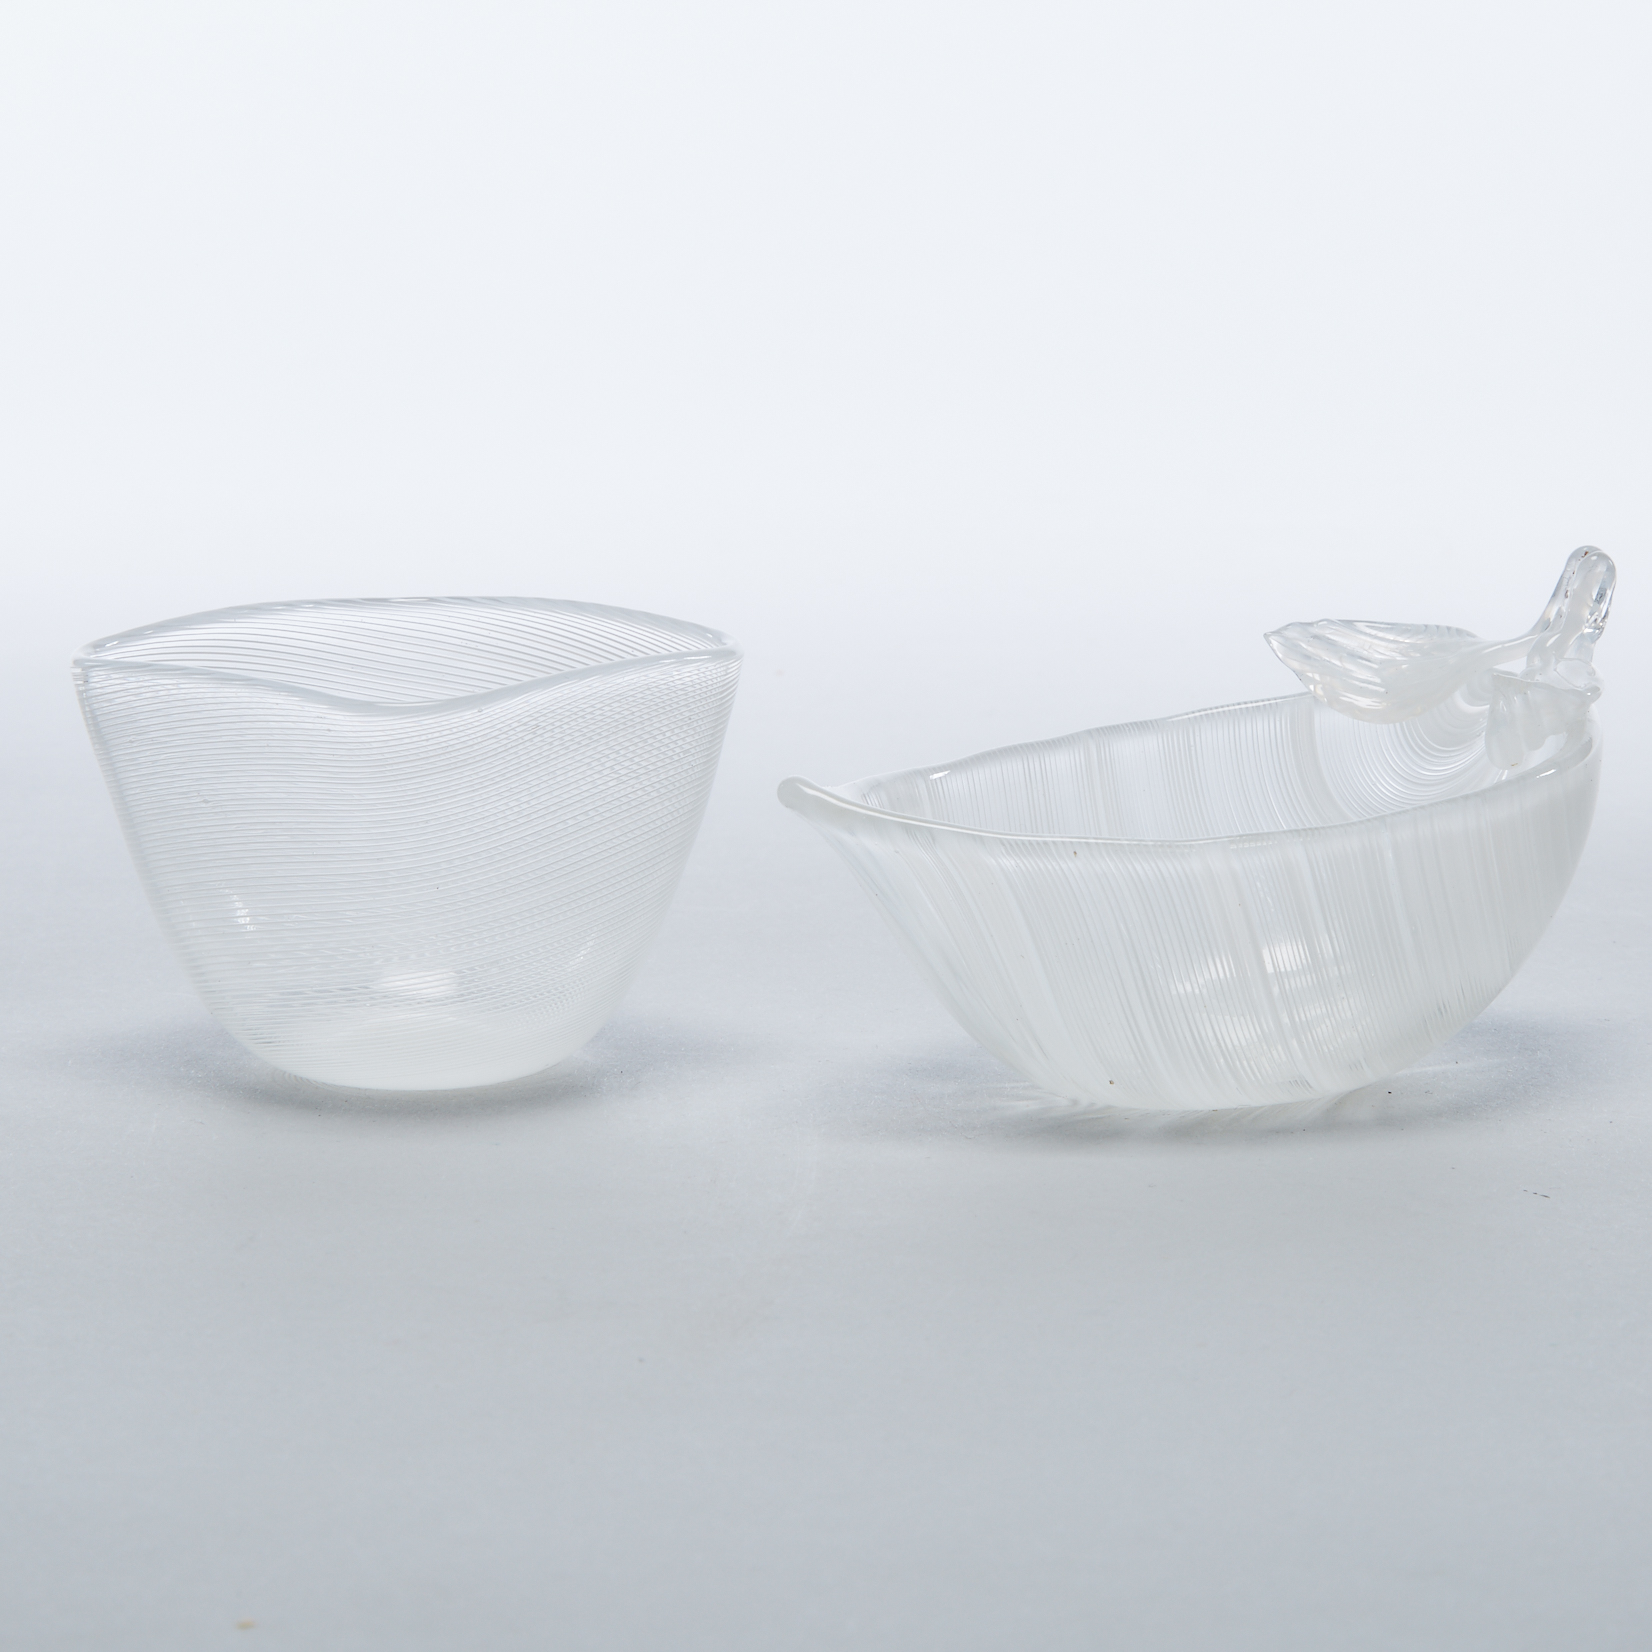 Two Venini Opaque White Filigrana Glass Small Dishes, 20th century